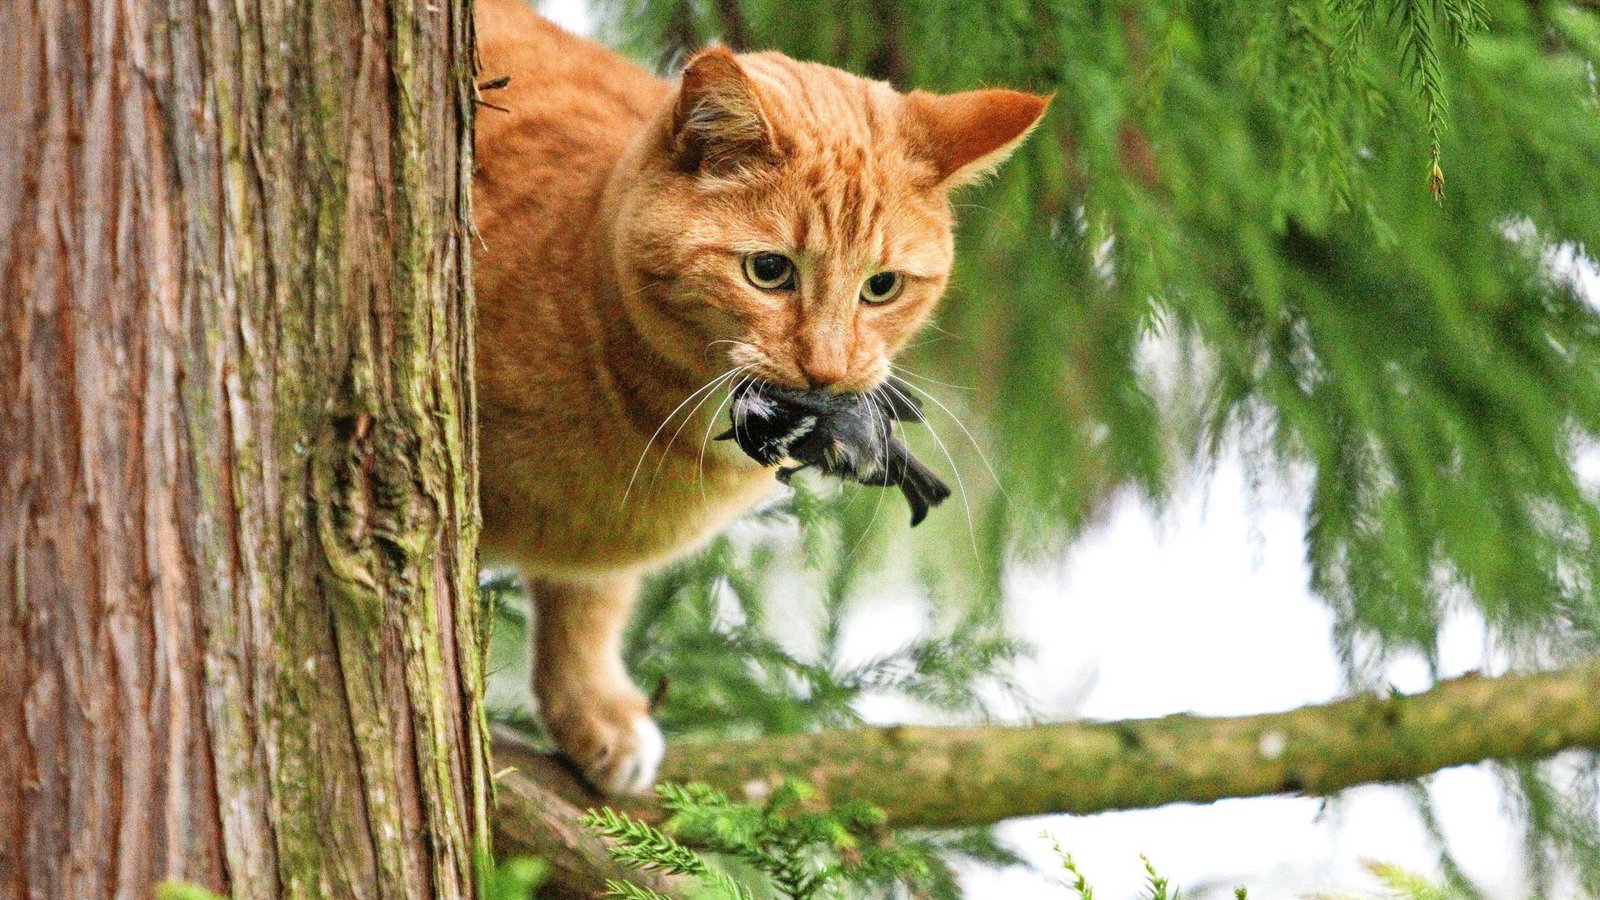 Katzen fangen nicht nur Mäuse, sondern auch Vögel – wie diese Jägerin, die eine Kohlmeise erbeutet hat.Foto: Imago/Michael Kristen